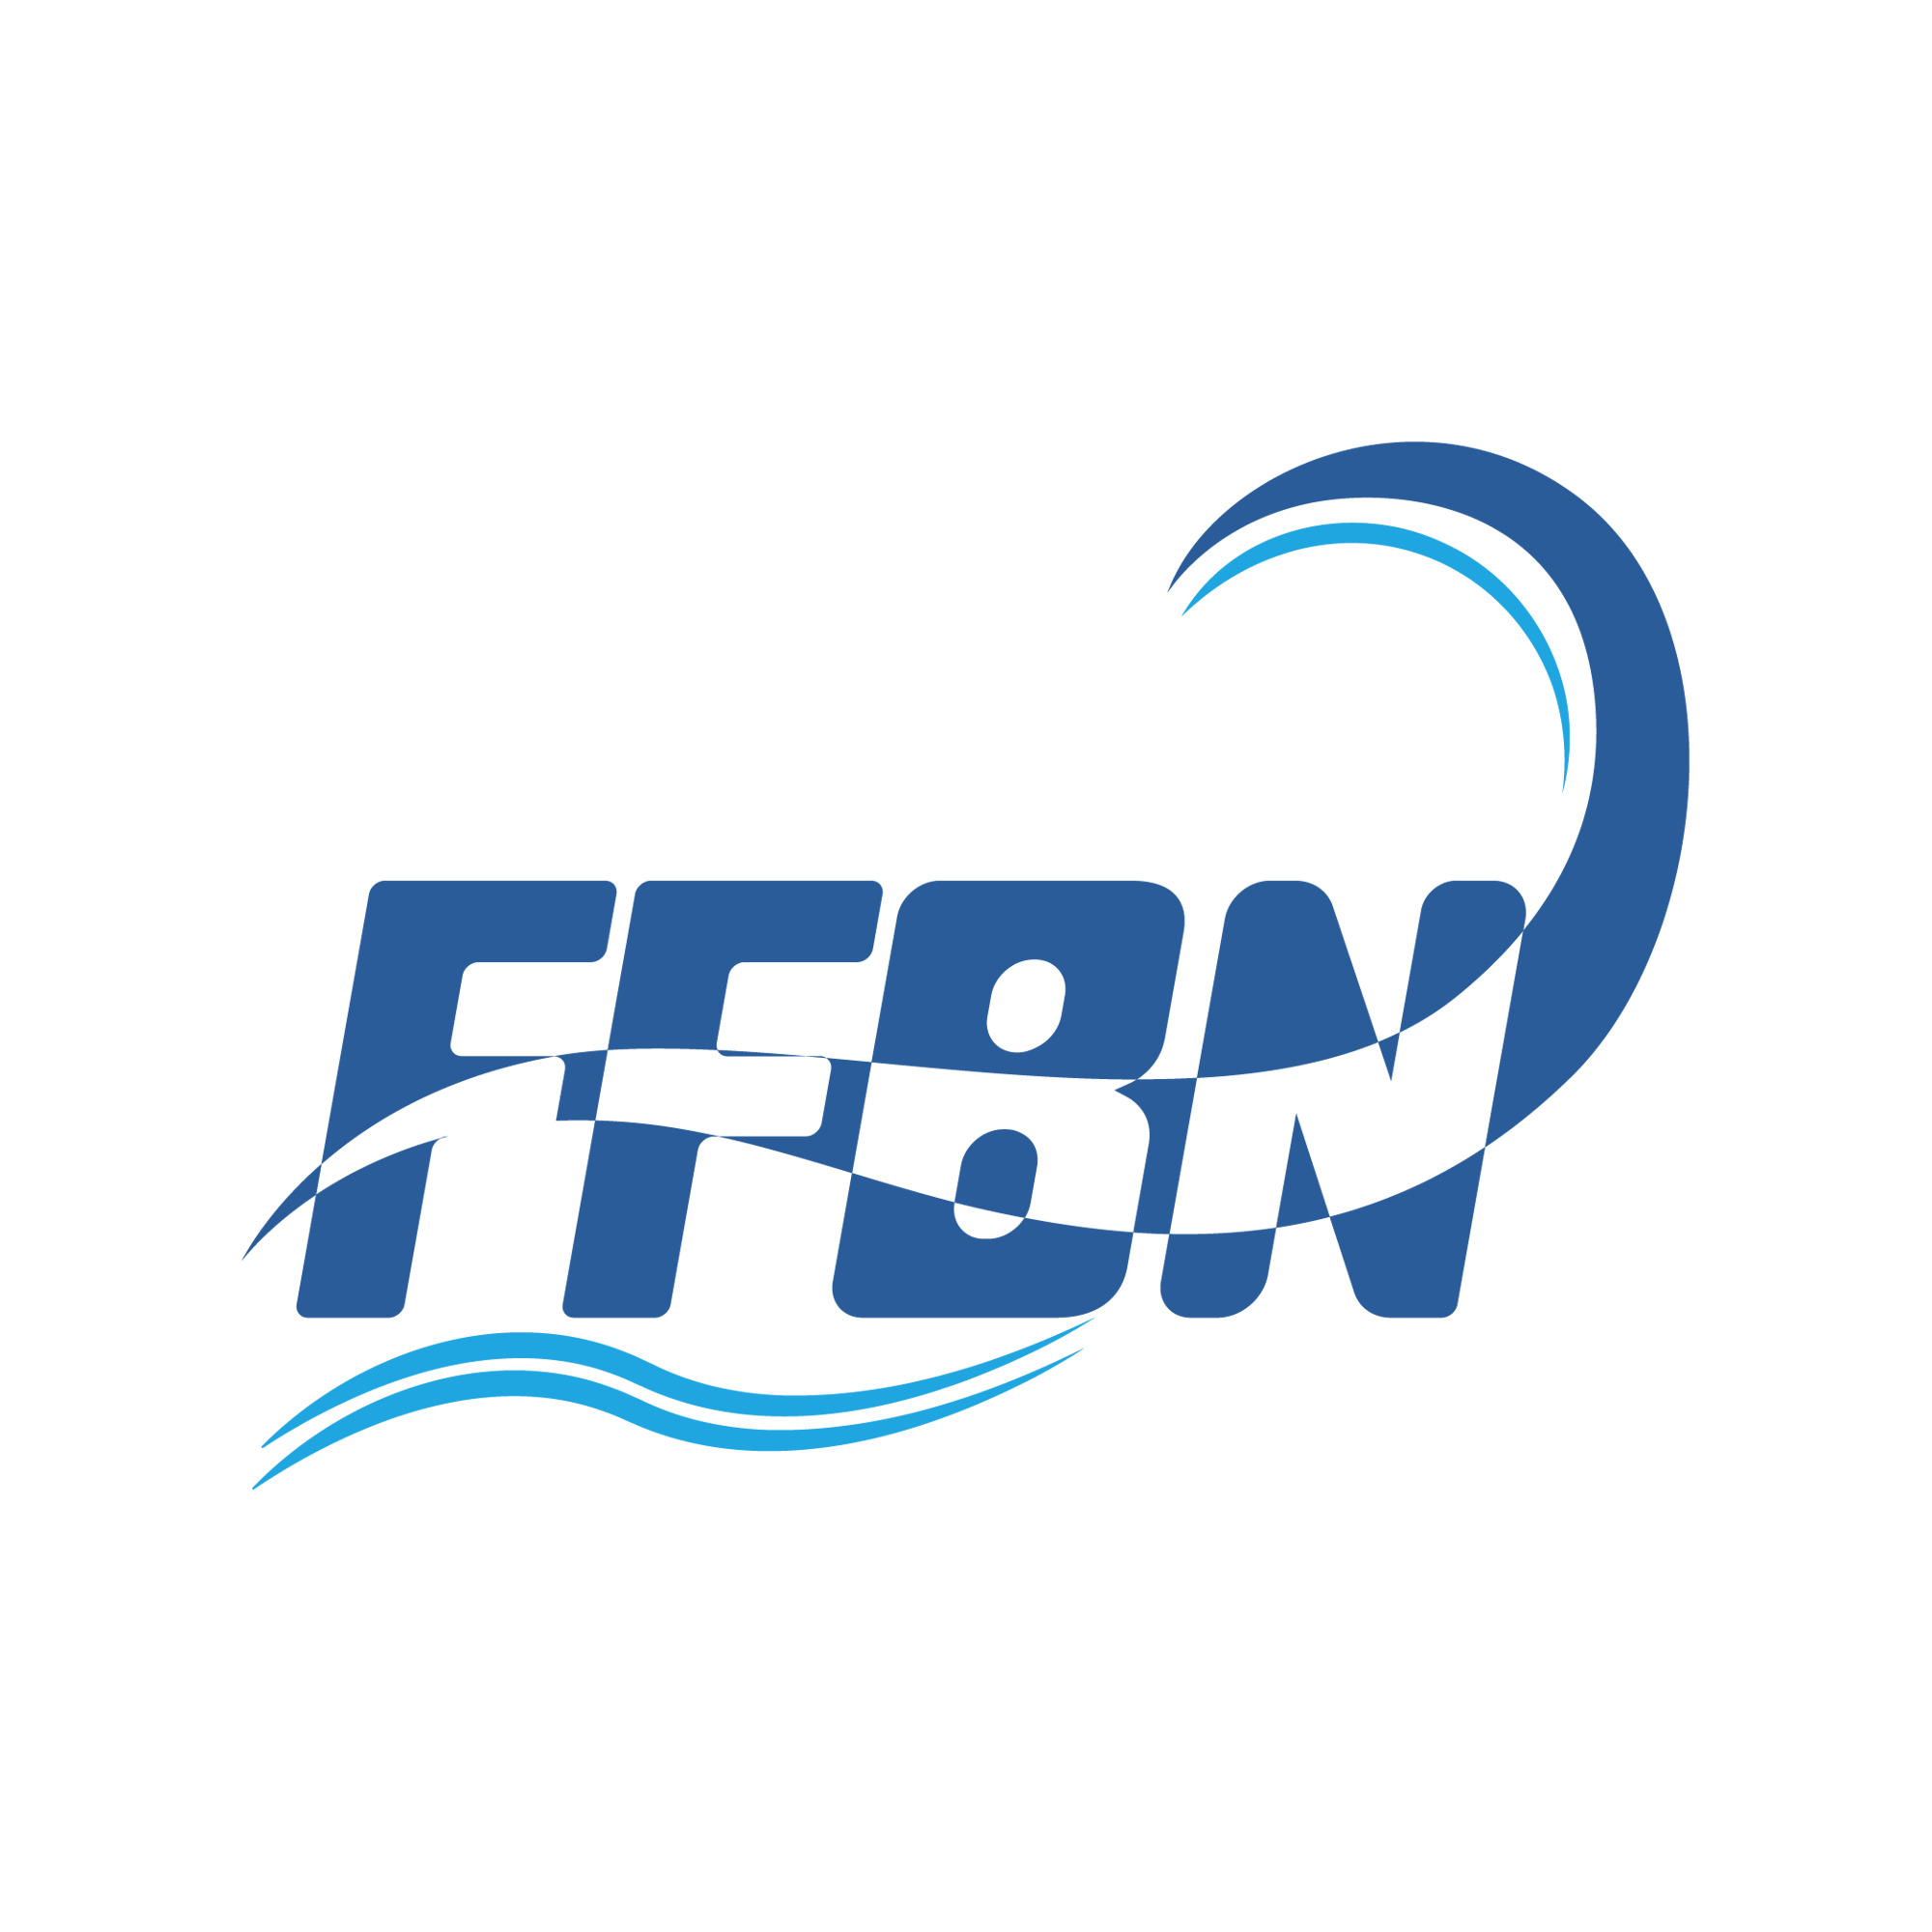 FFBN high performance center op zoek naar een nieuwe zwemcoach